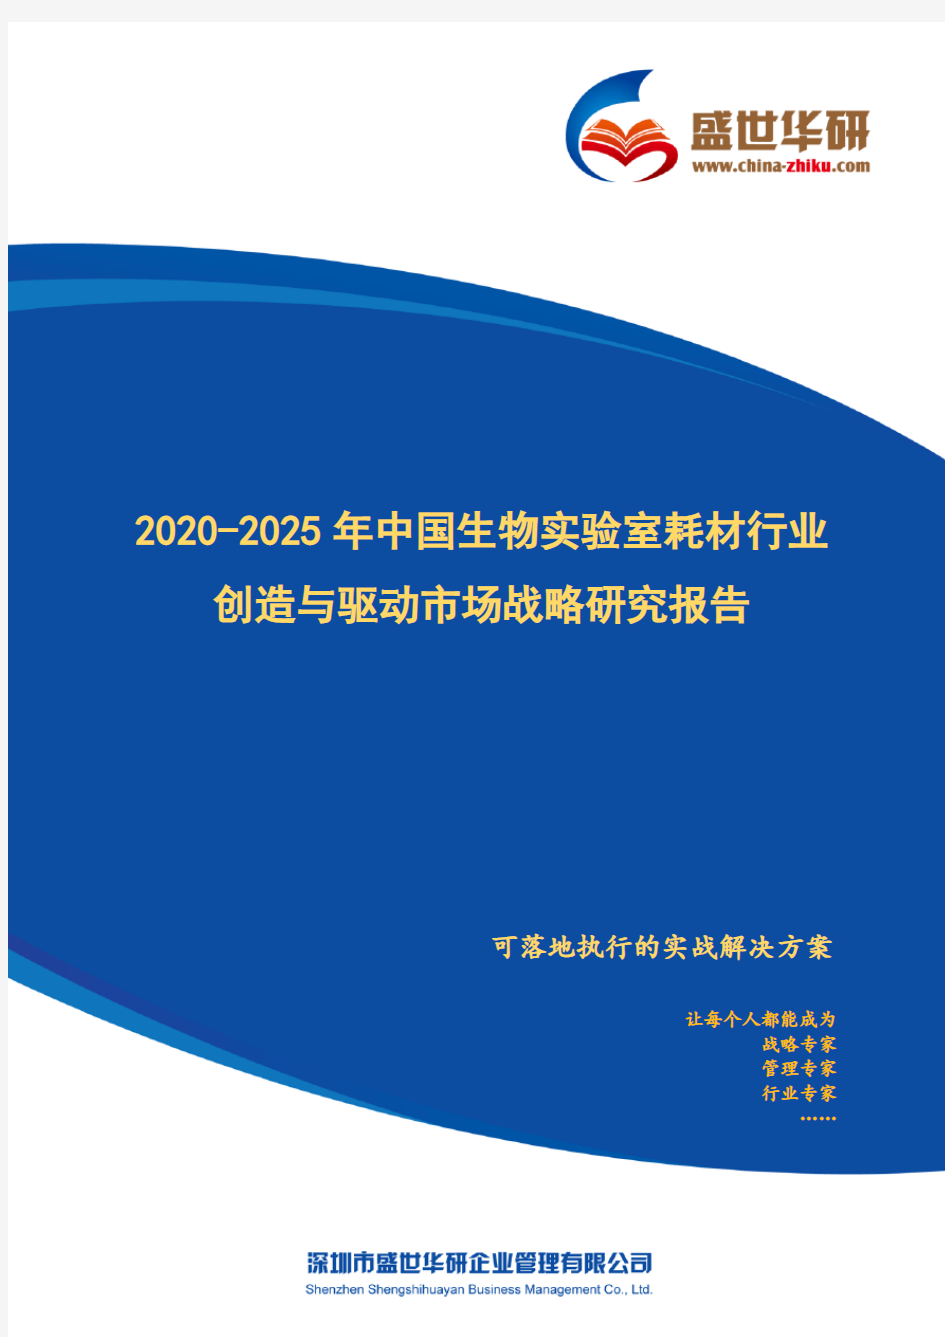 【完整版】2020-2025年中国生物实验室耗材行业创造与驱动市场战略研究报告